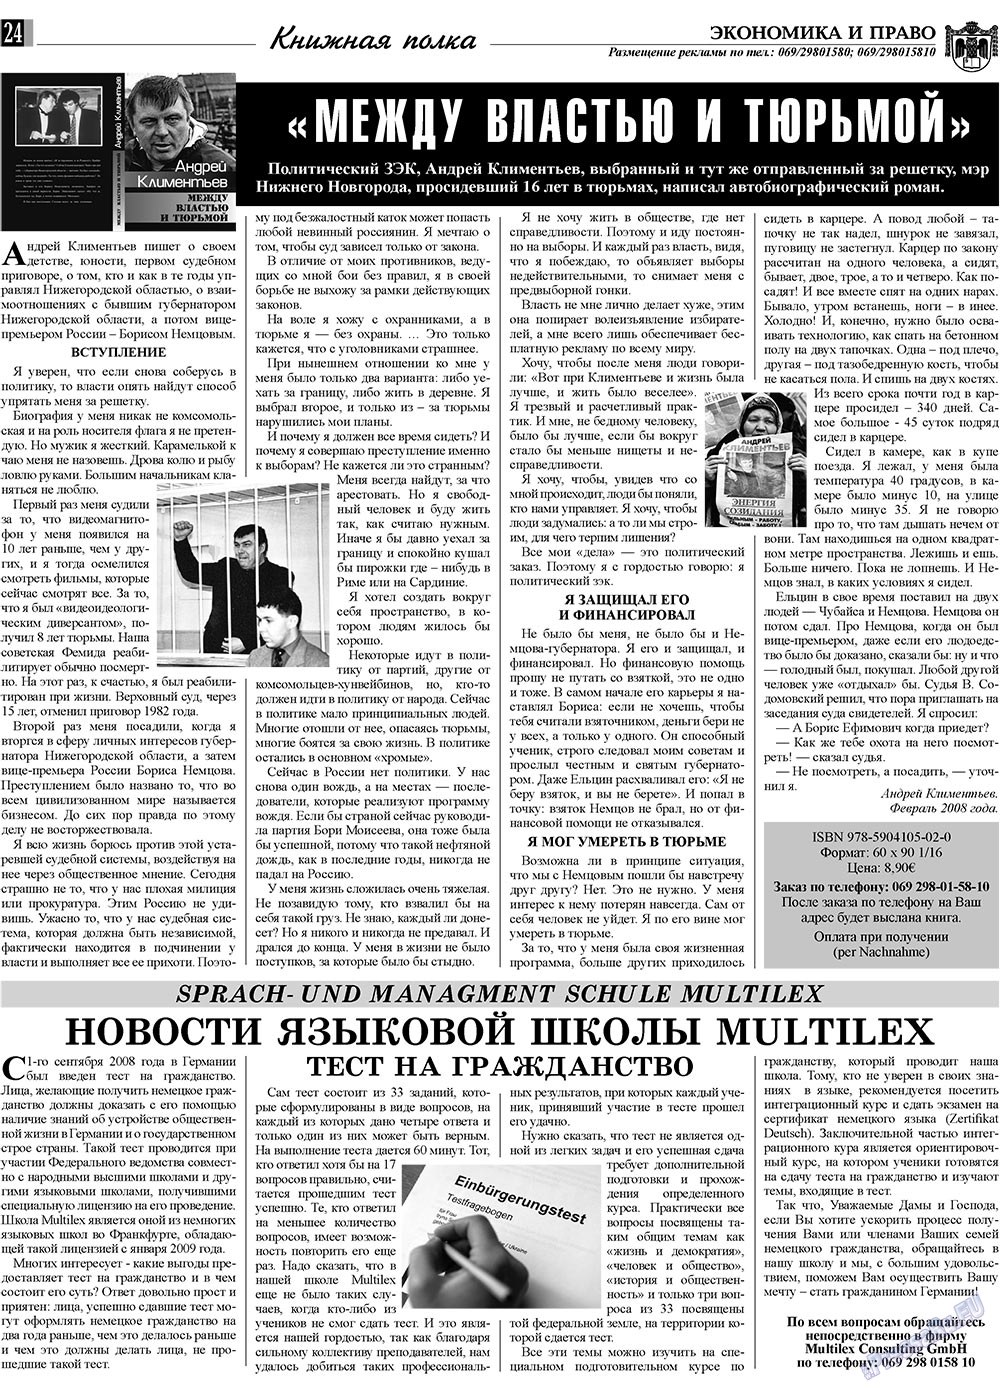 Экономика и право, газета. 2009 №8 стр.24